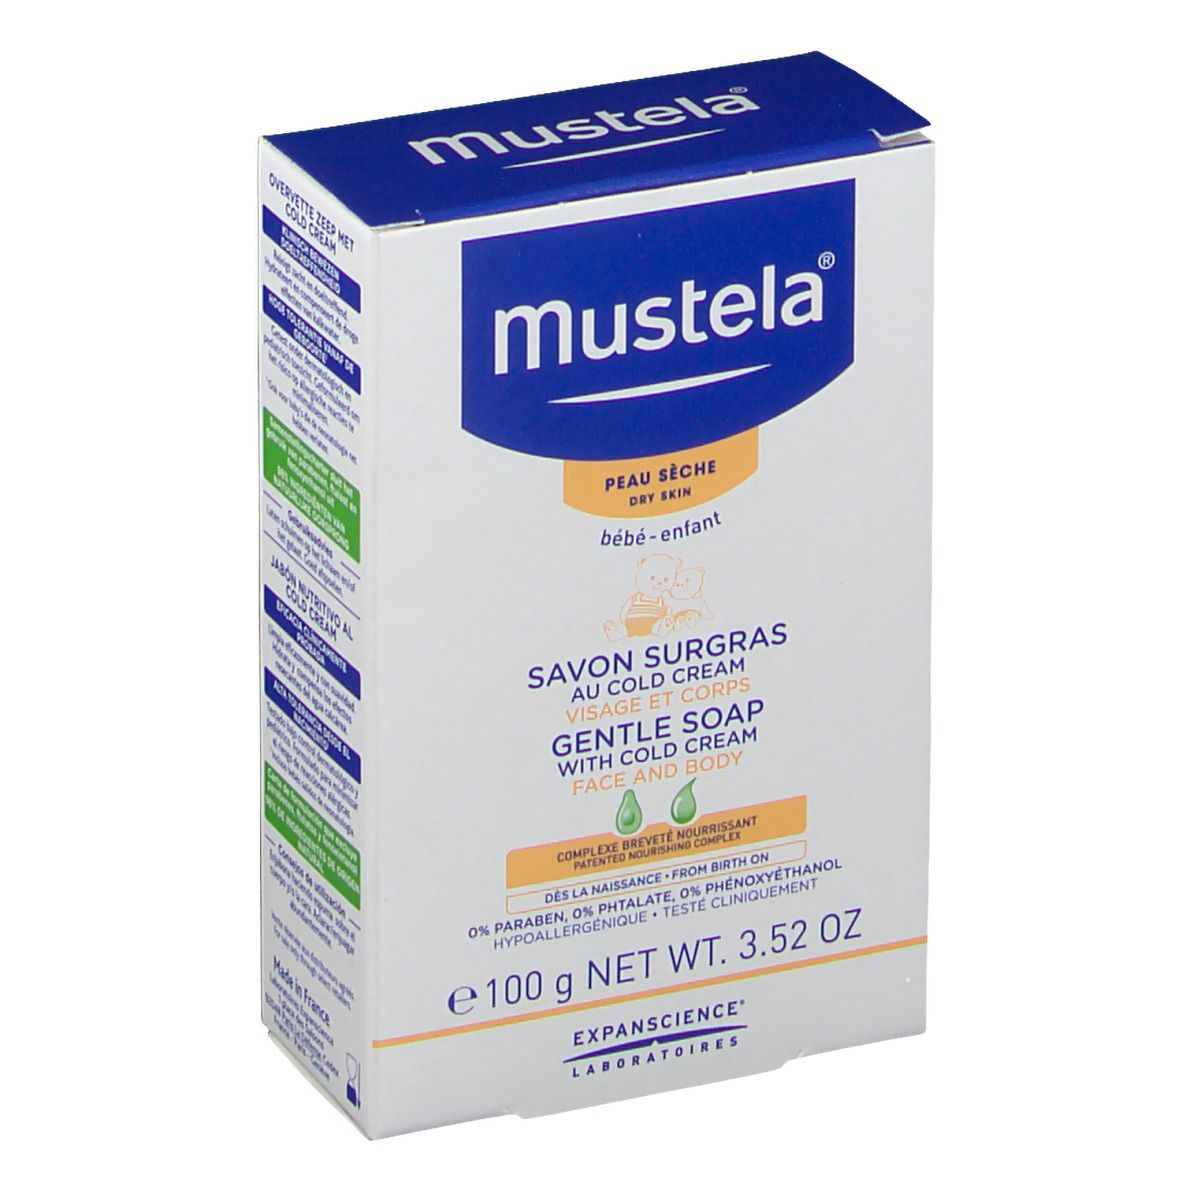 mustela® Savon Surgras au Cold cream